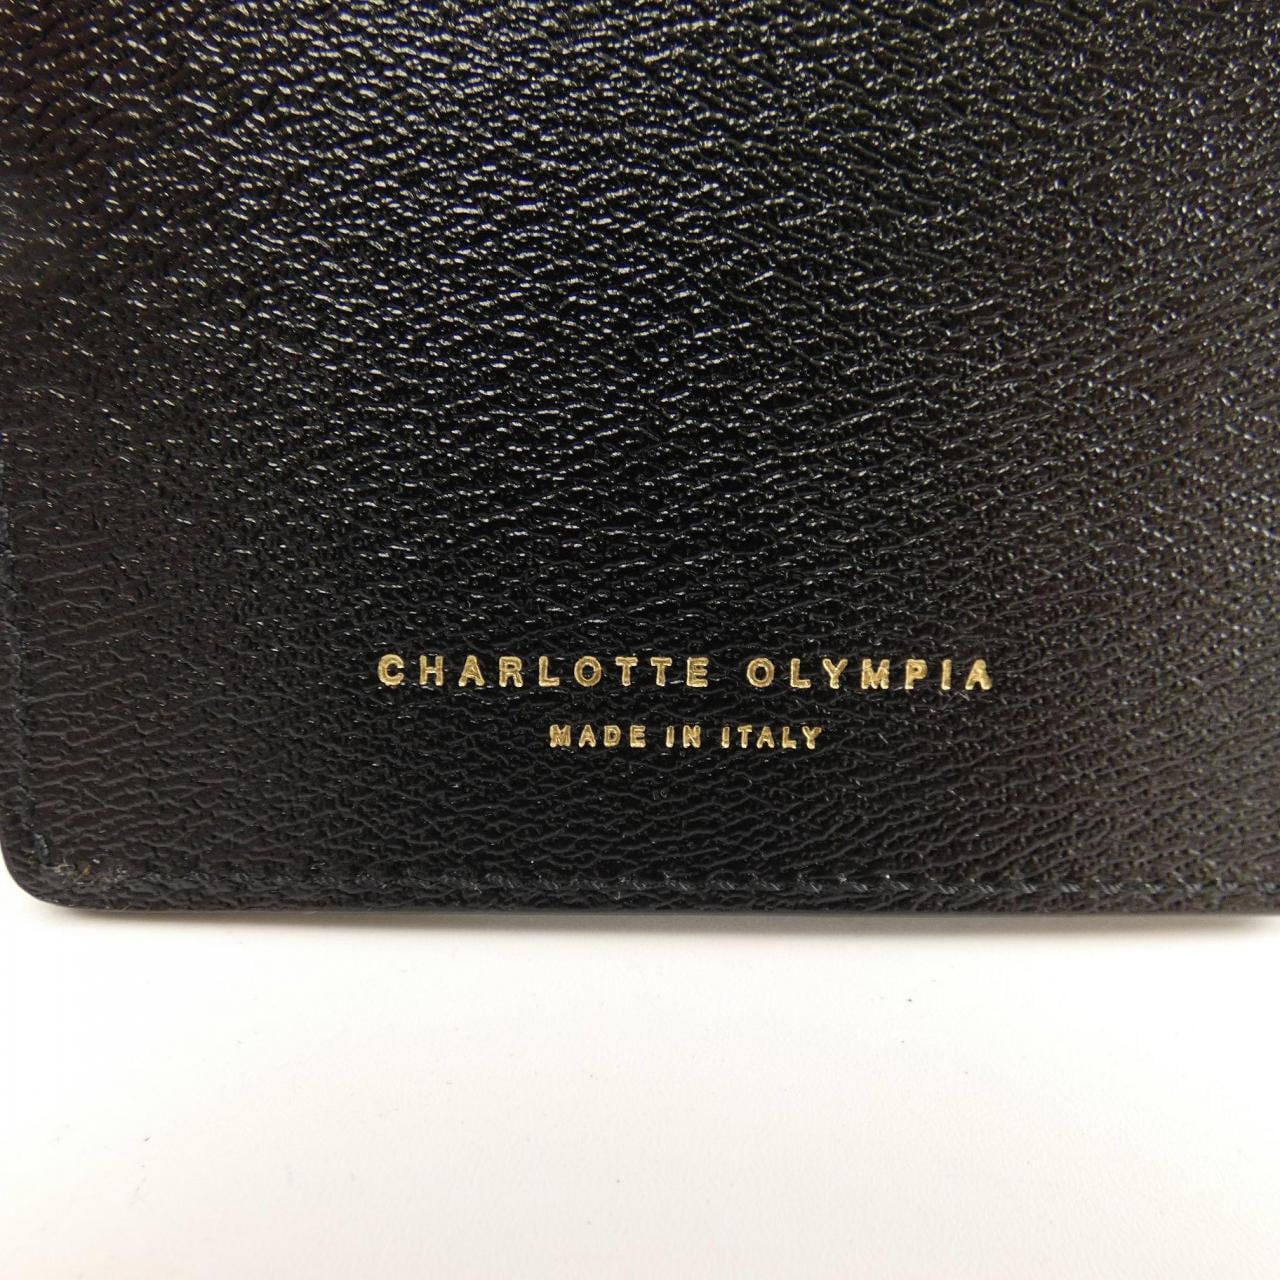 夏洛特奥林匹亚CHARLOTTE OLYMPIA手机套